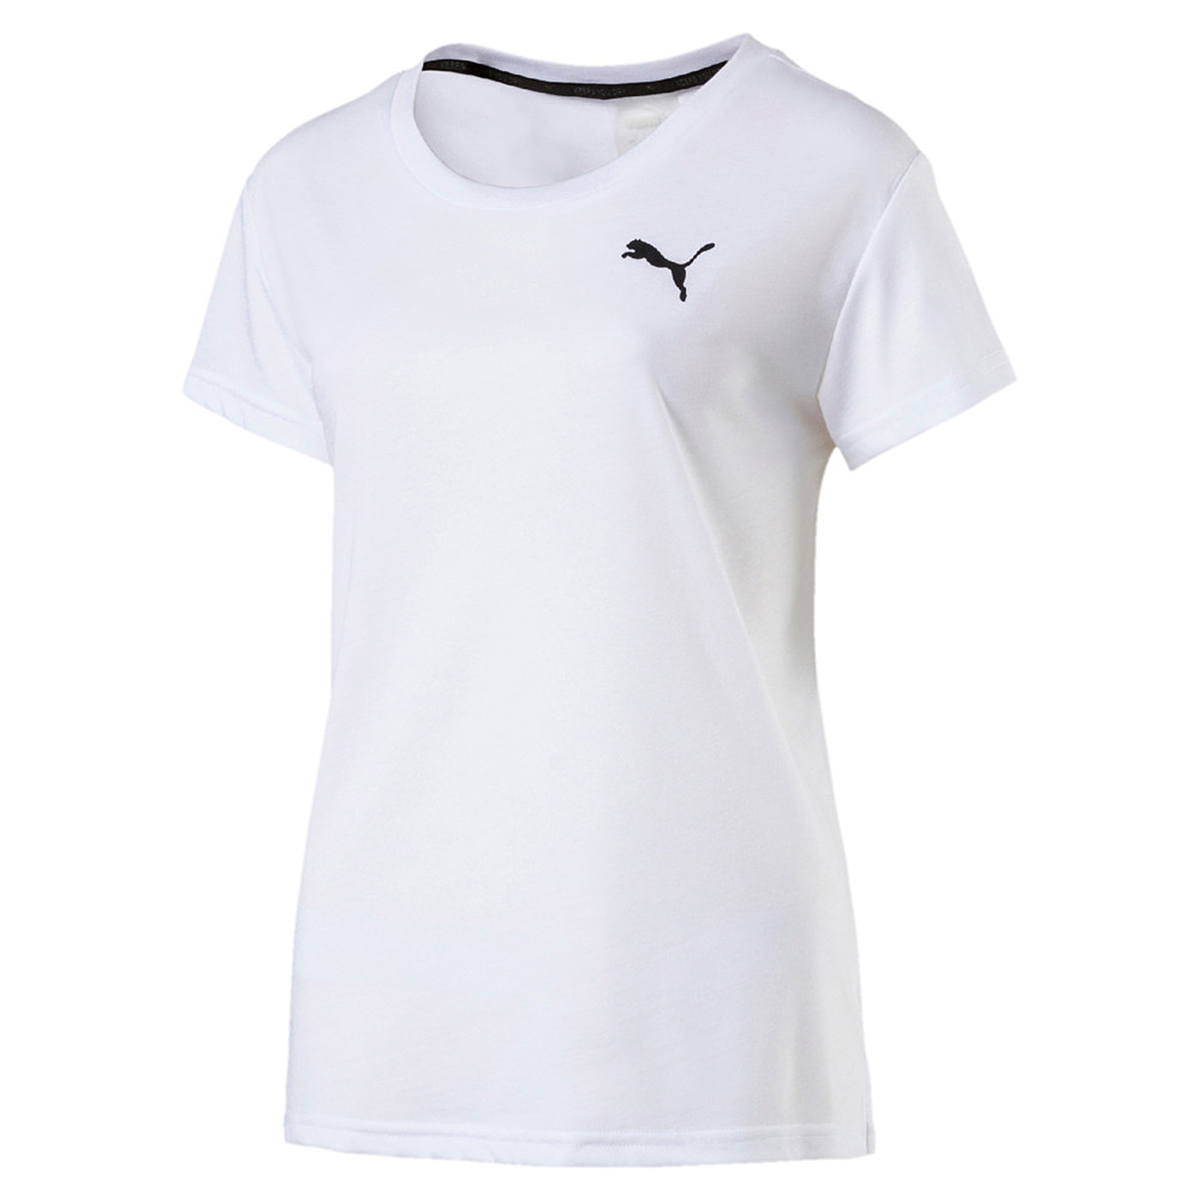 PUMA Damen Urban Sports Logo Tee T-shirt Top Dry Cell weiss